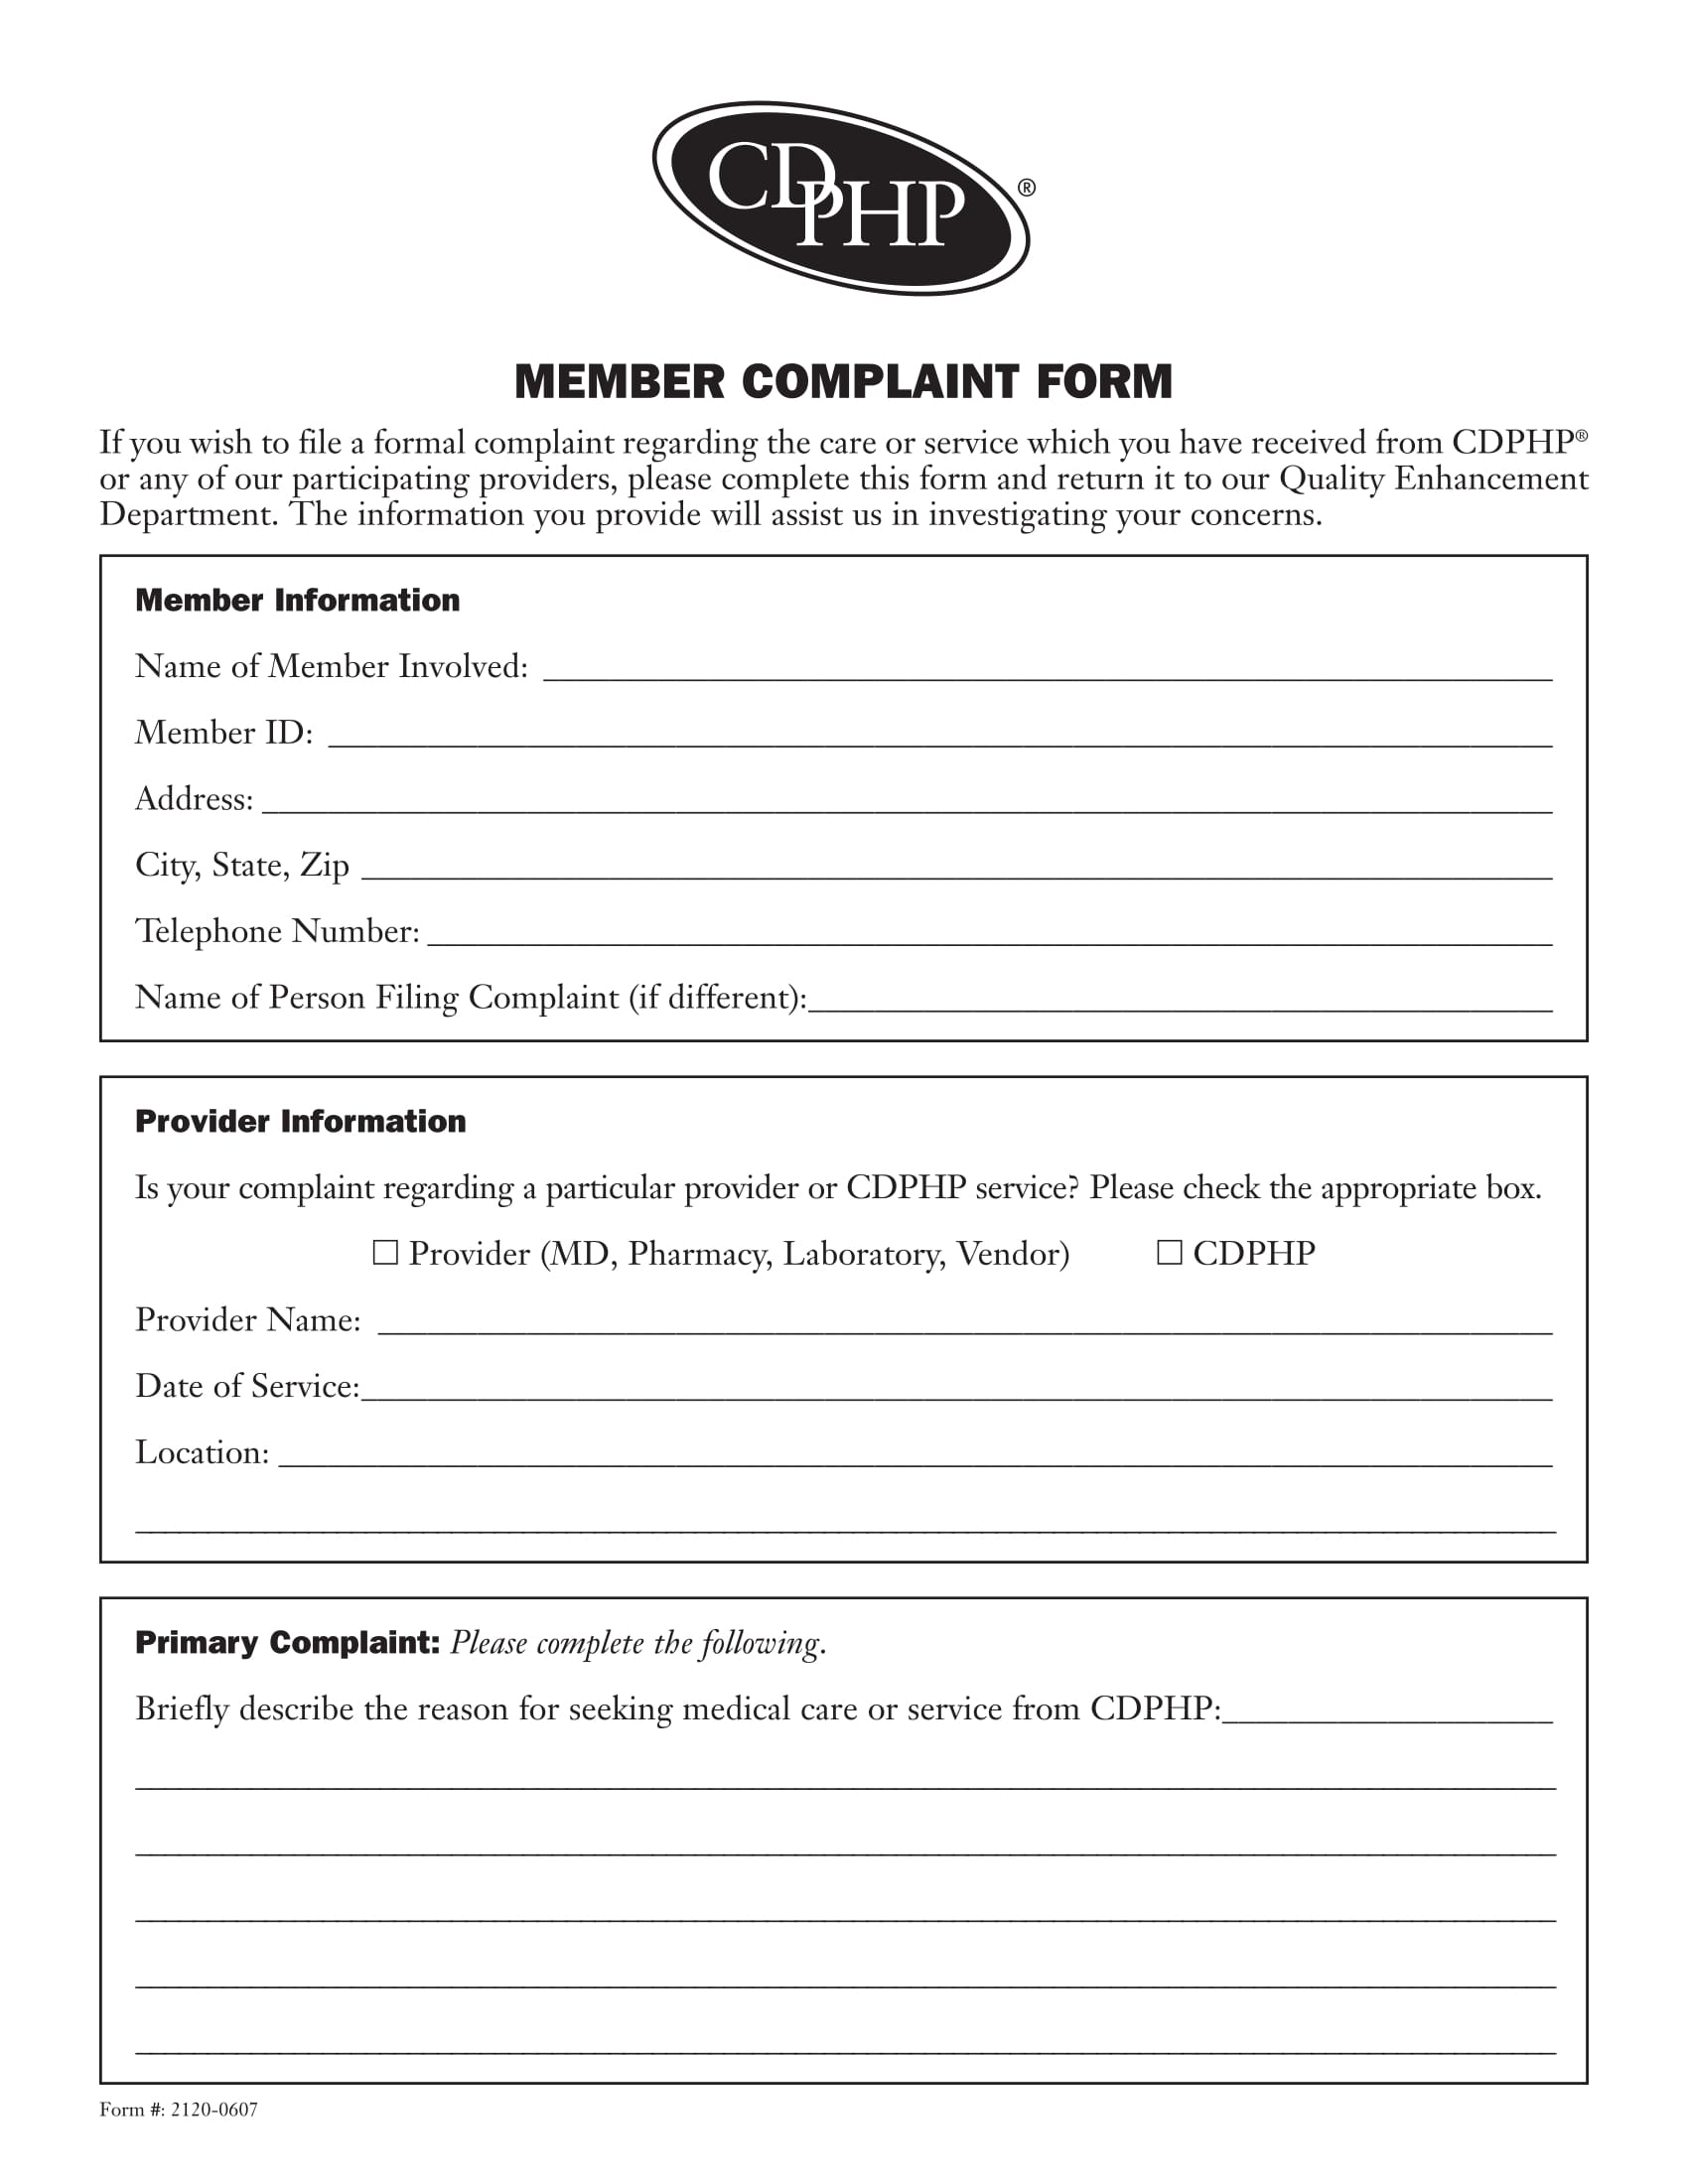 formal member complaint form 1